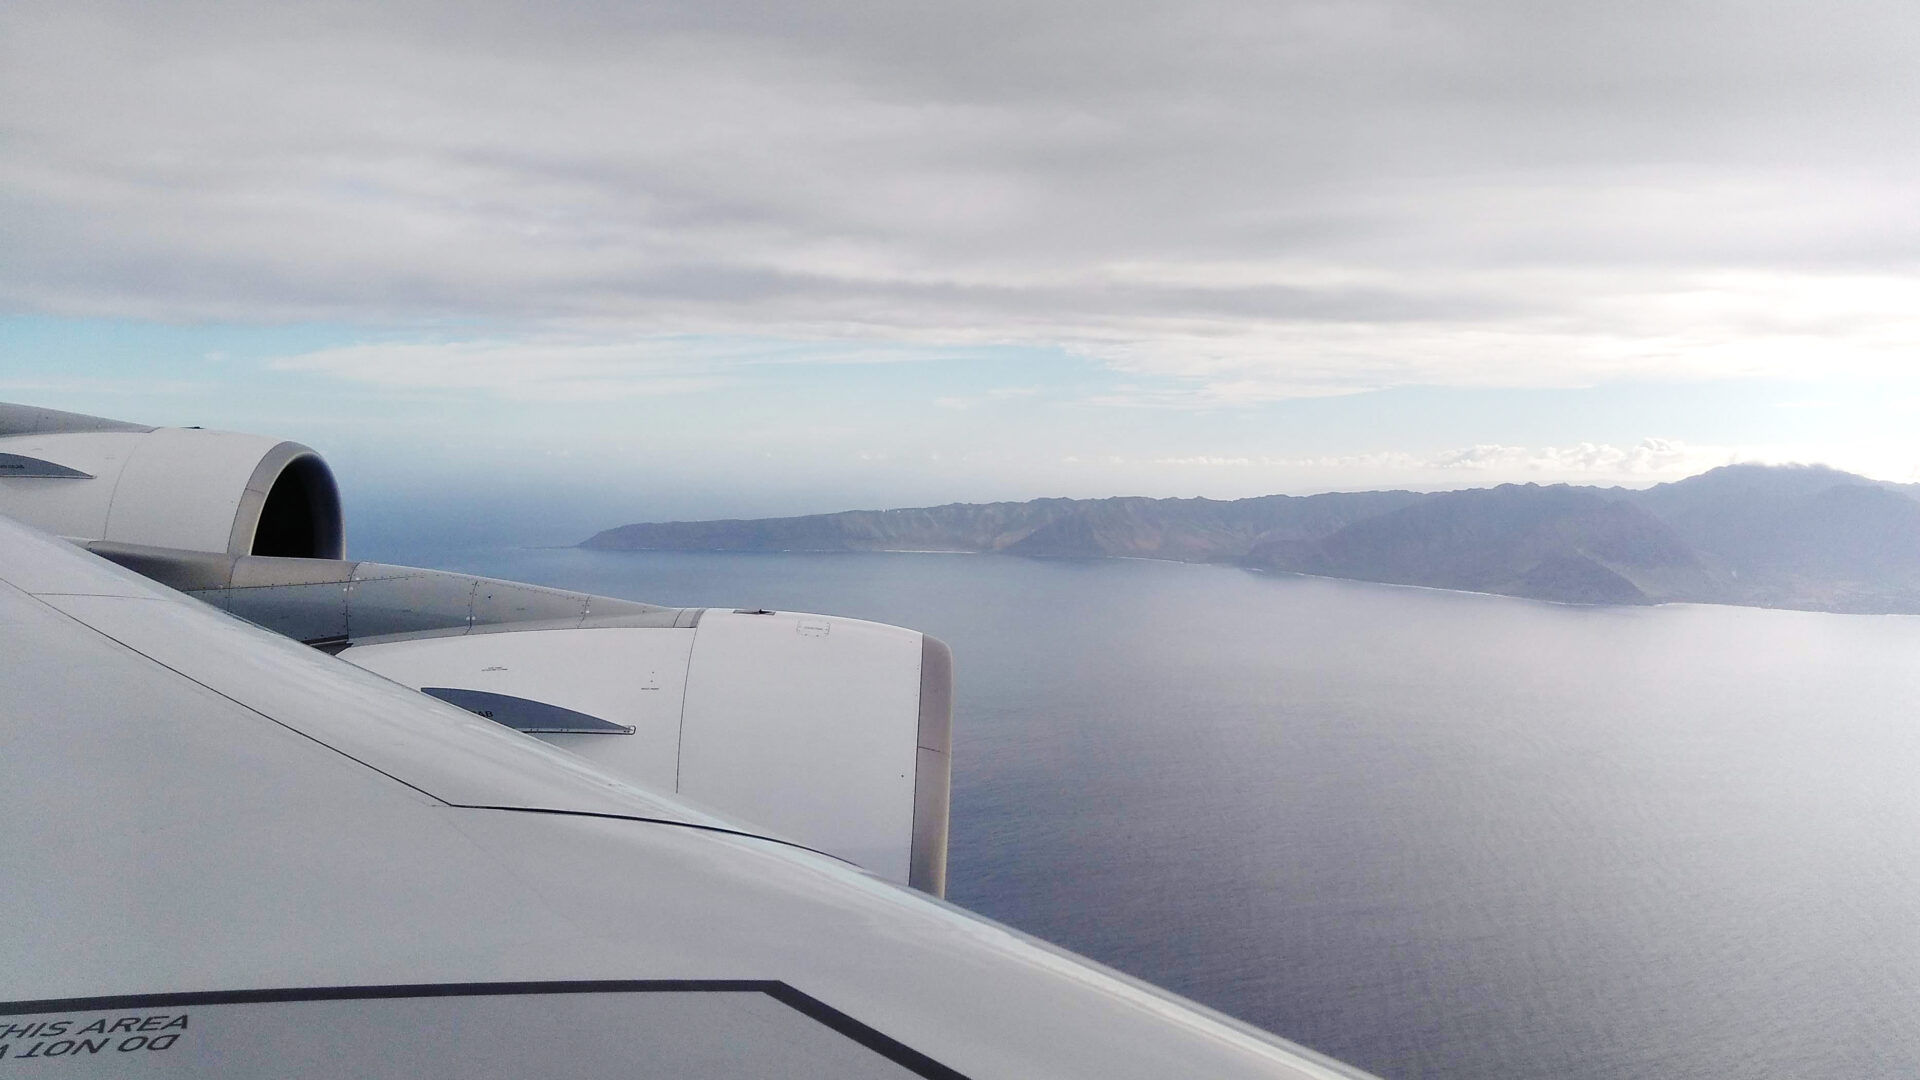 ハワイ・ホノルル路線の飛行機は、右側？左側？どちらがいい？ 日本→ホノルル 出発便では左側から朝日とオアフ島が美しく見られる